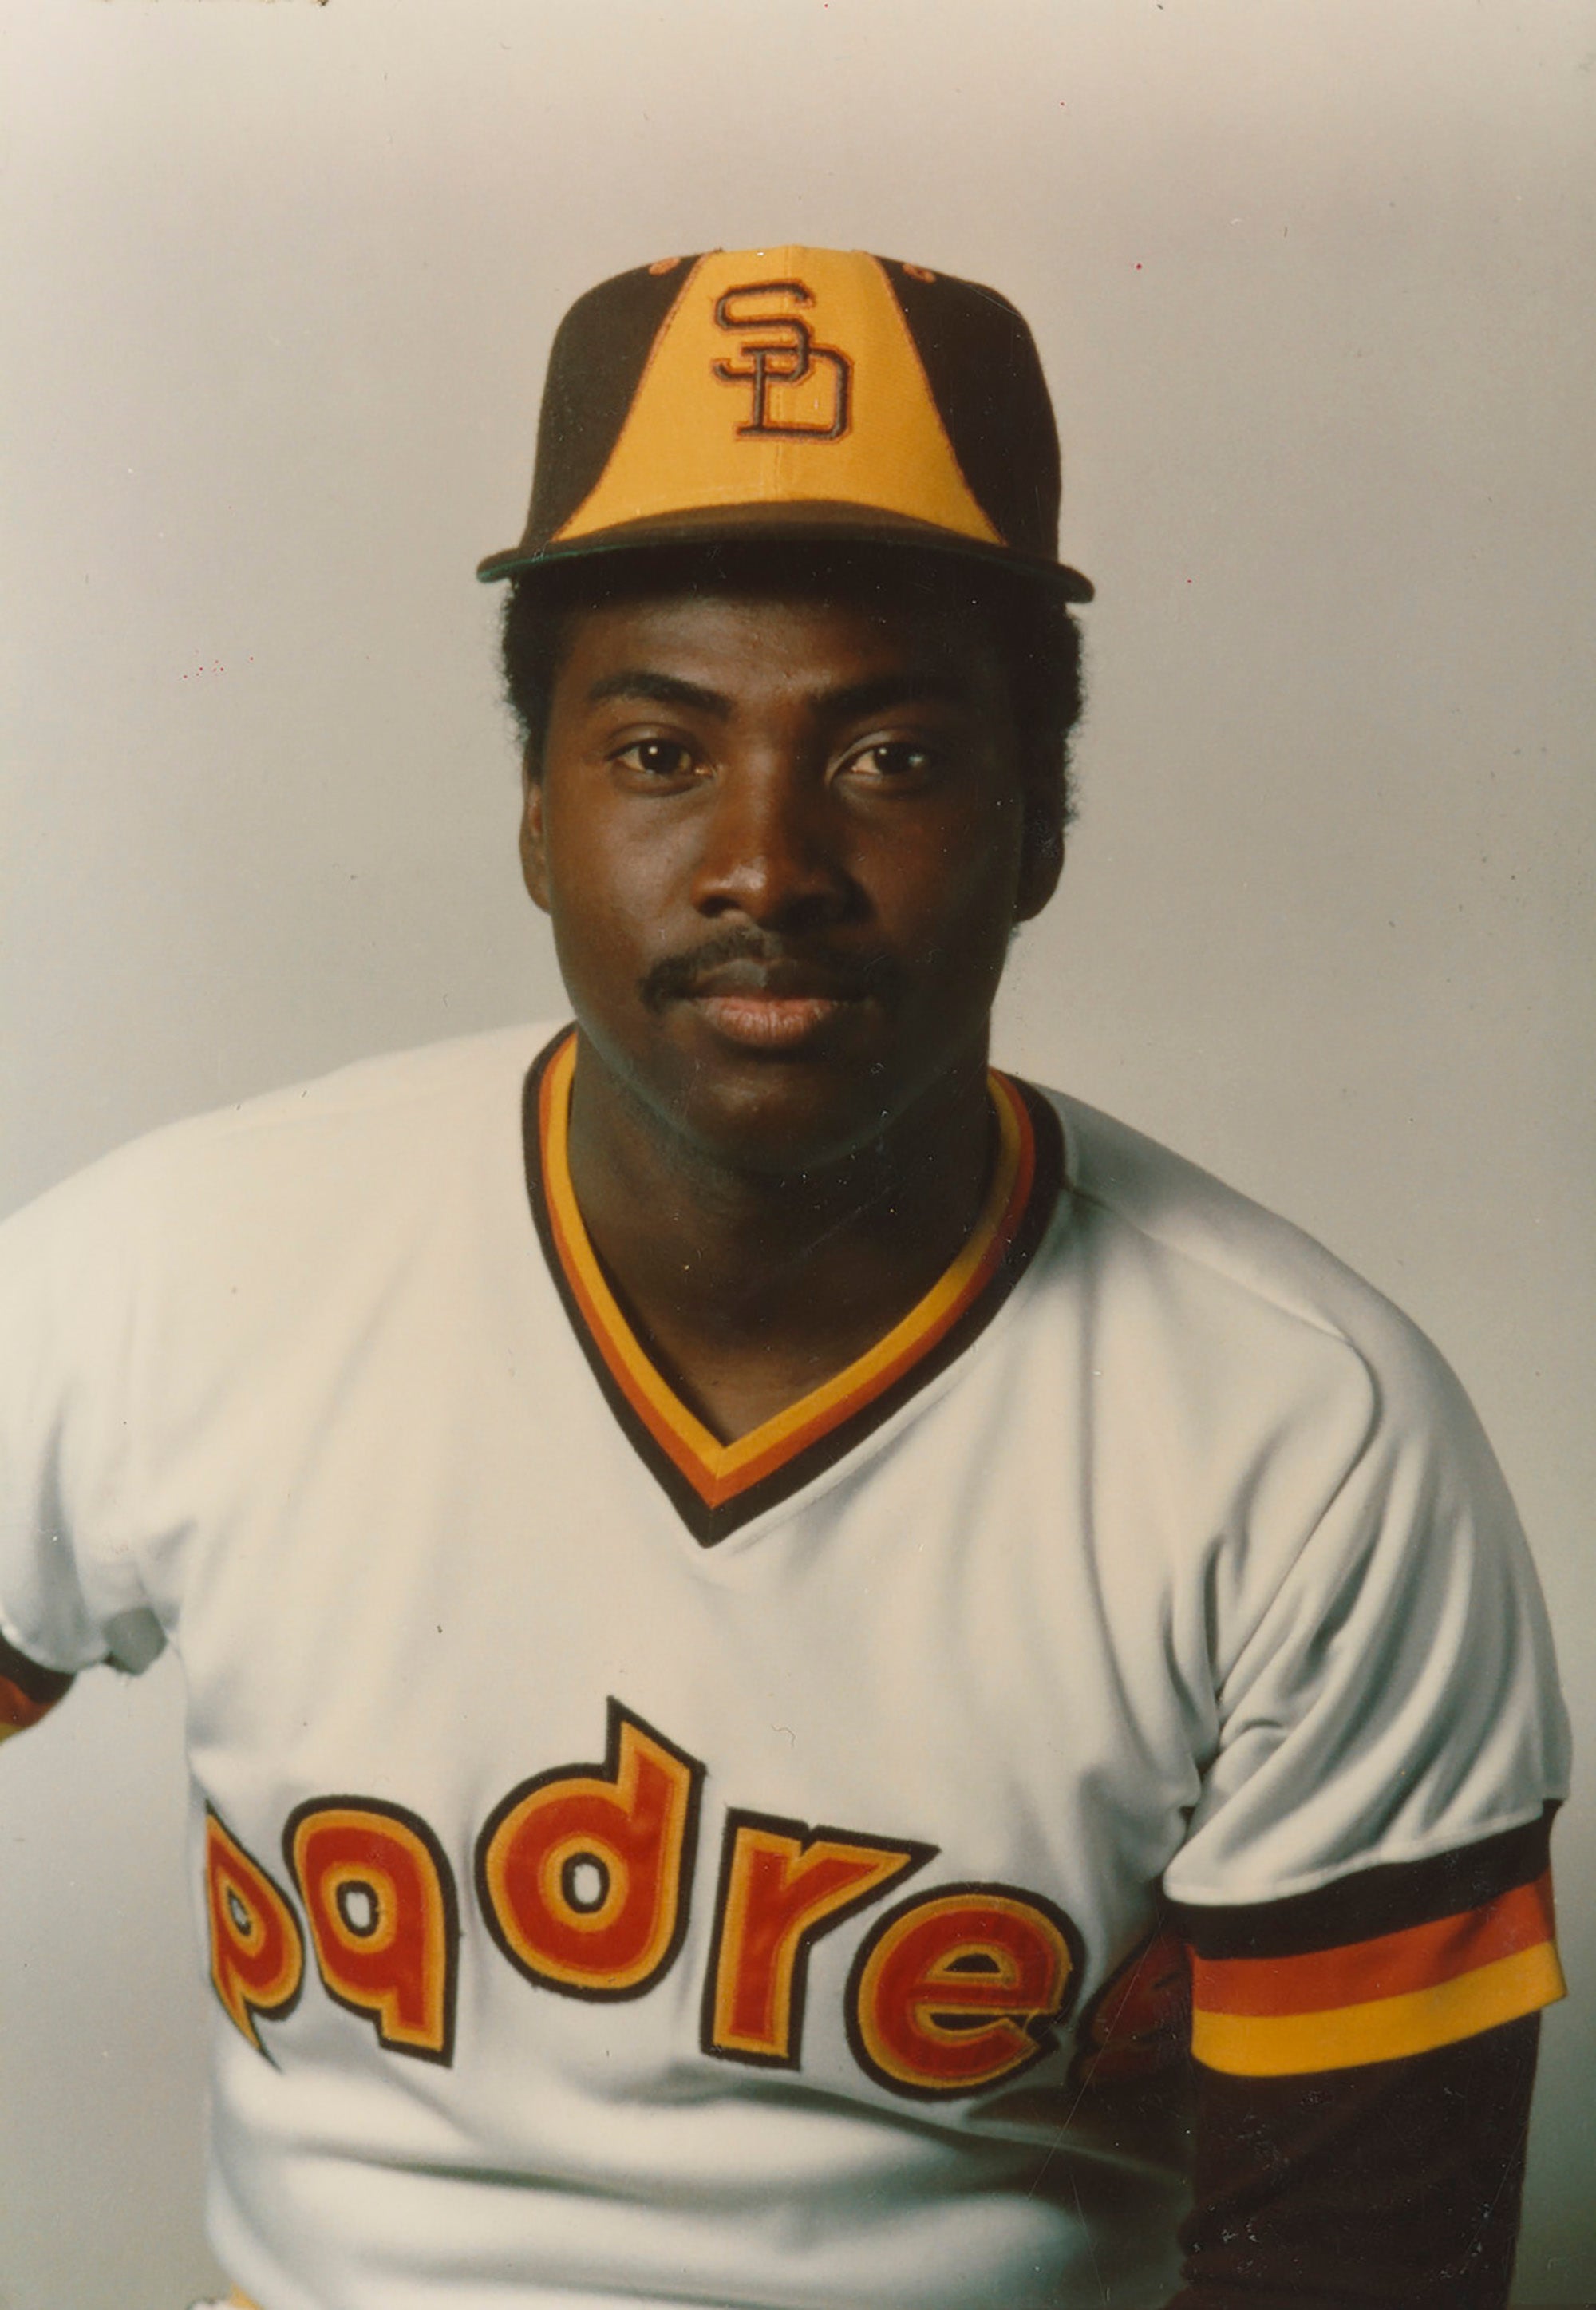 Gwynn, Tony  Baseball Hall of Fame